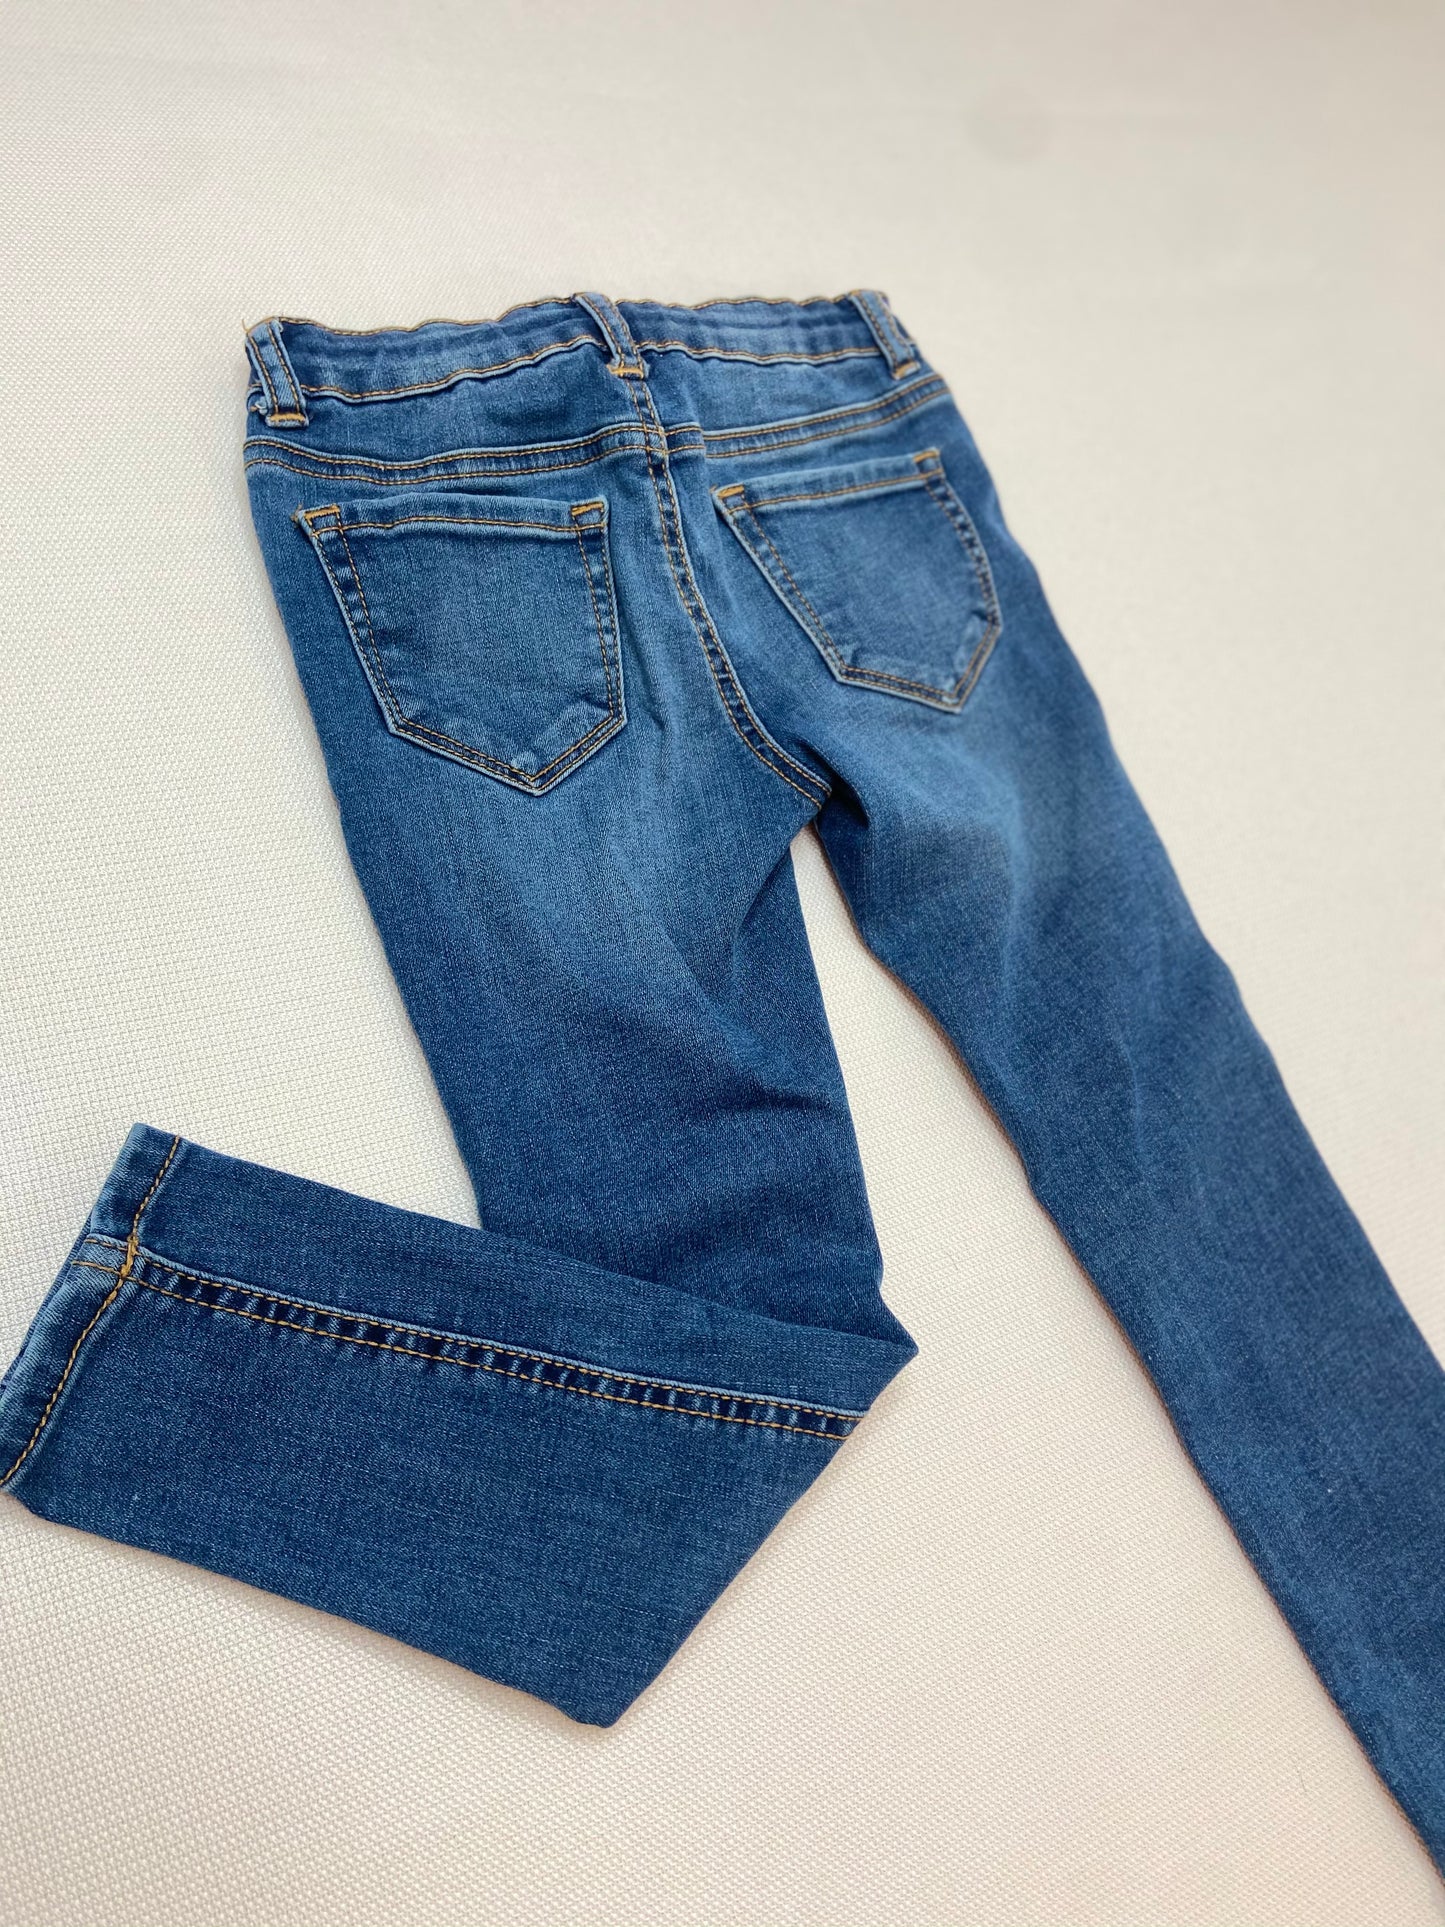 Superflex Dark Wash skinny Jeans- 6